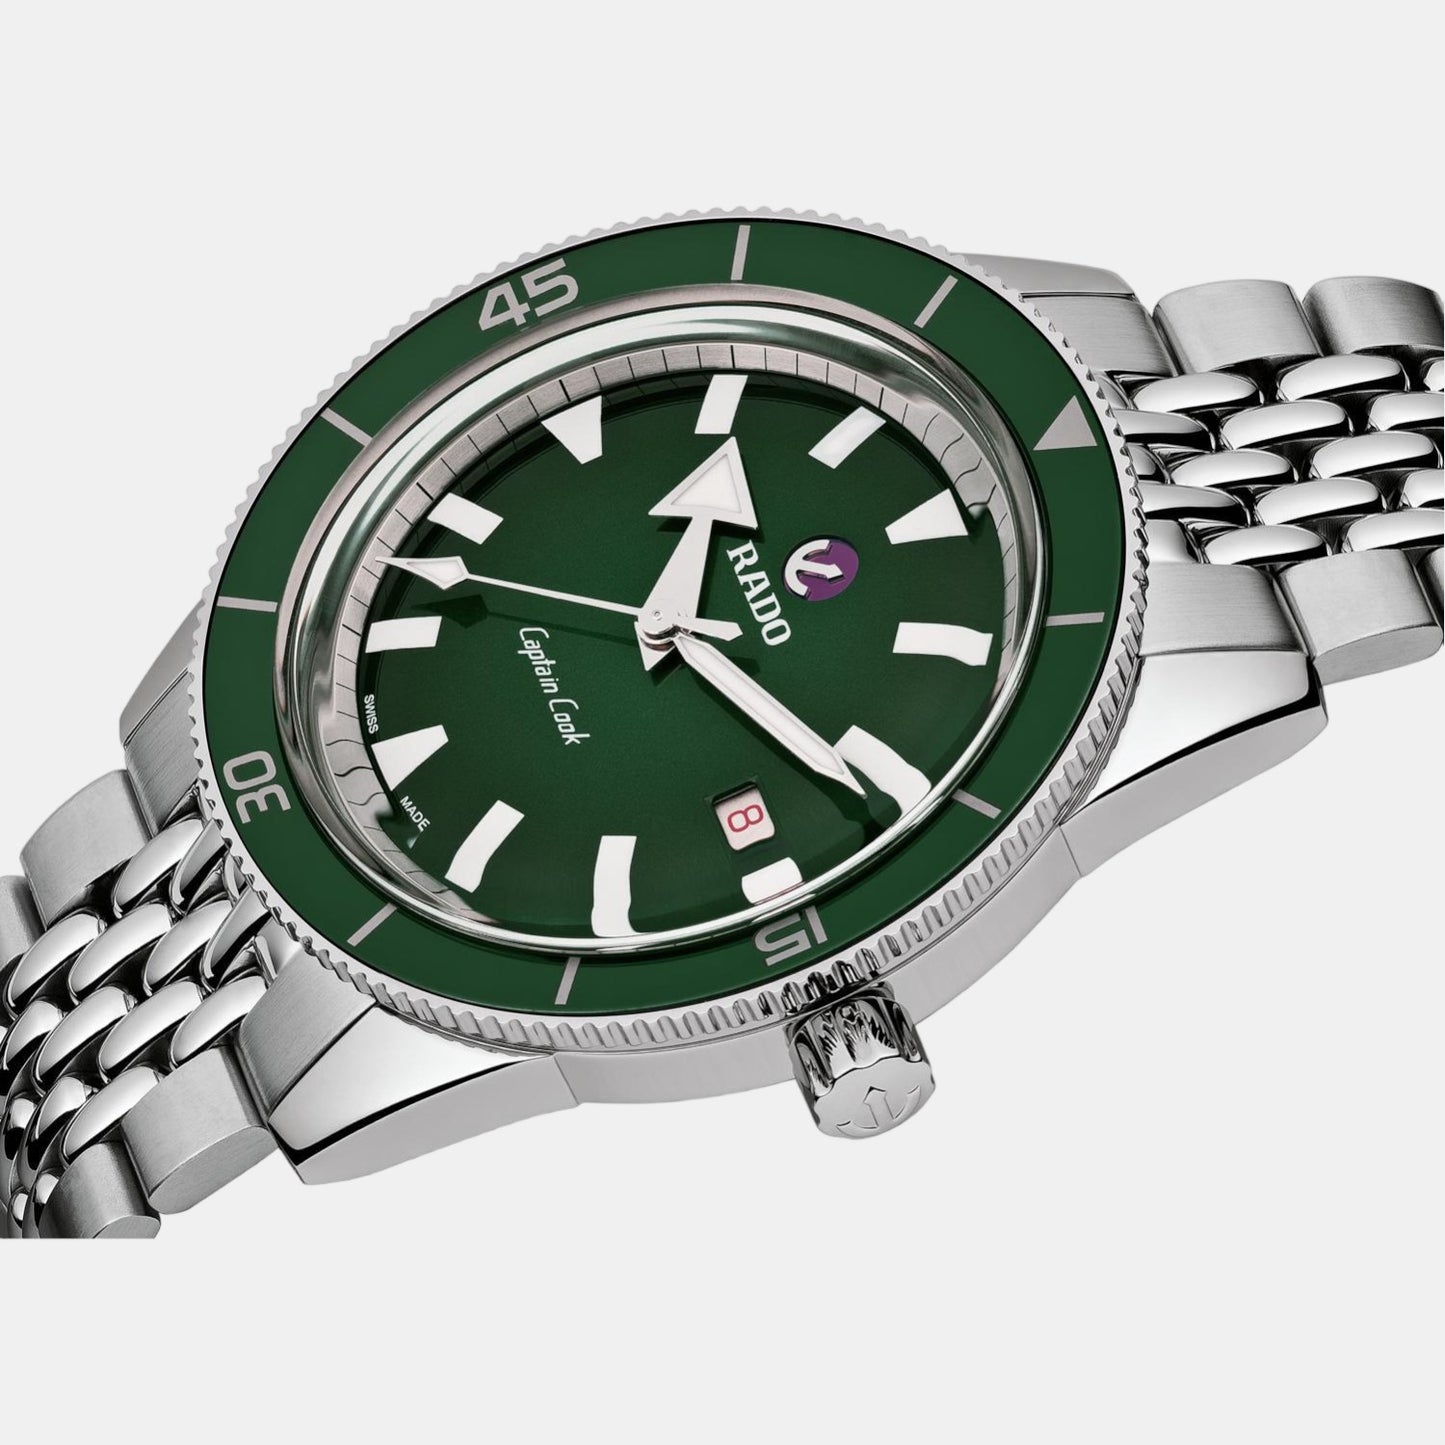 rado-stainless-steel-green-analog-men-watch-r32505313